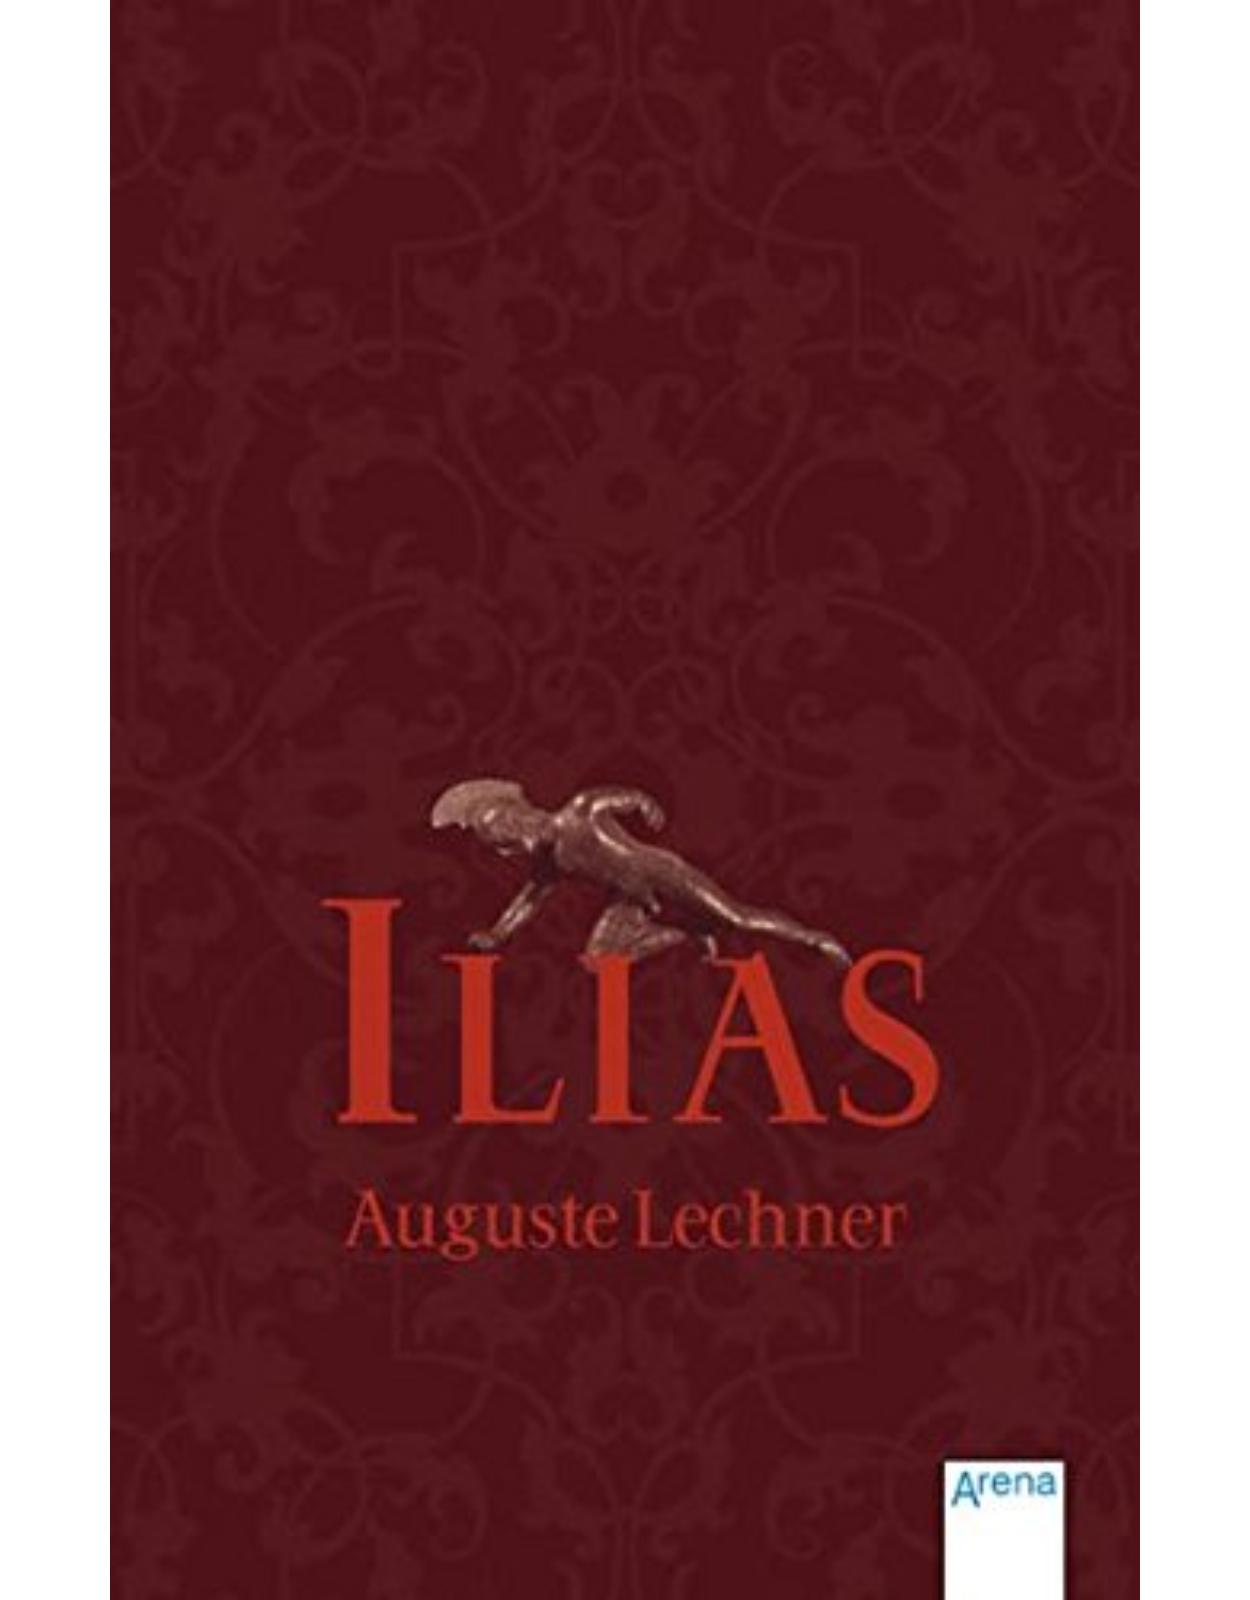 Ilias: Der Untergang Trojas (Auguste Lechner)